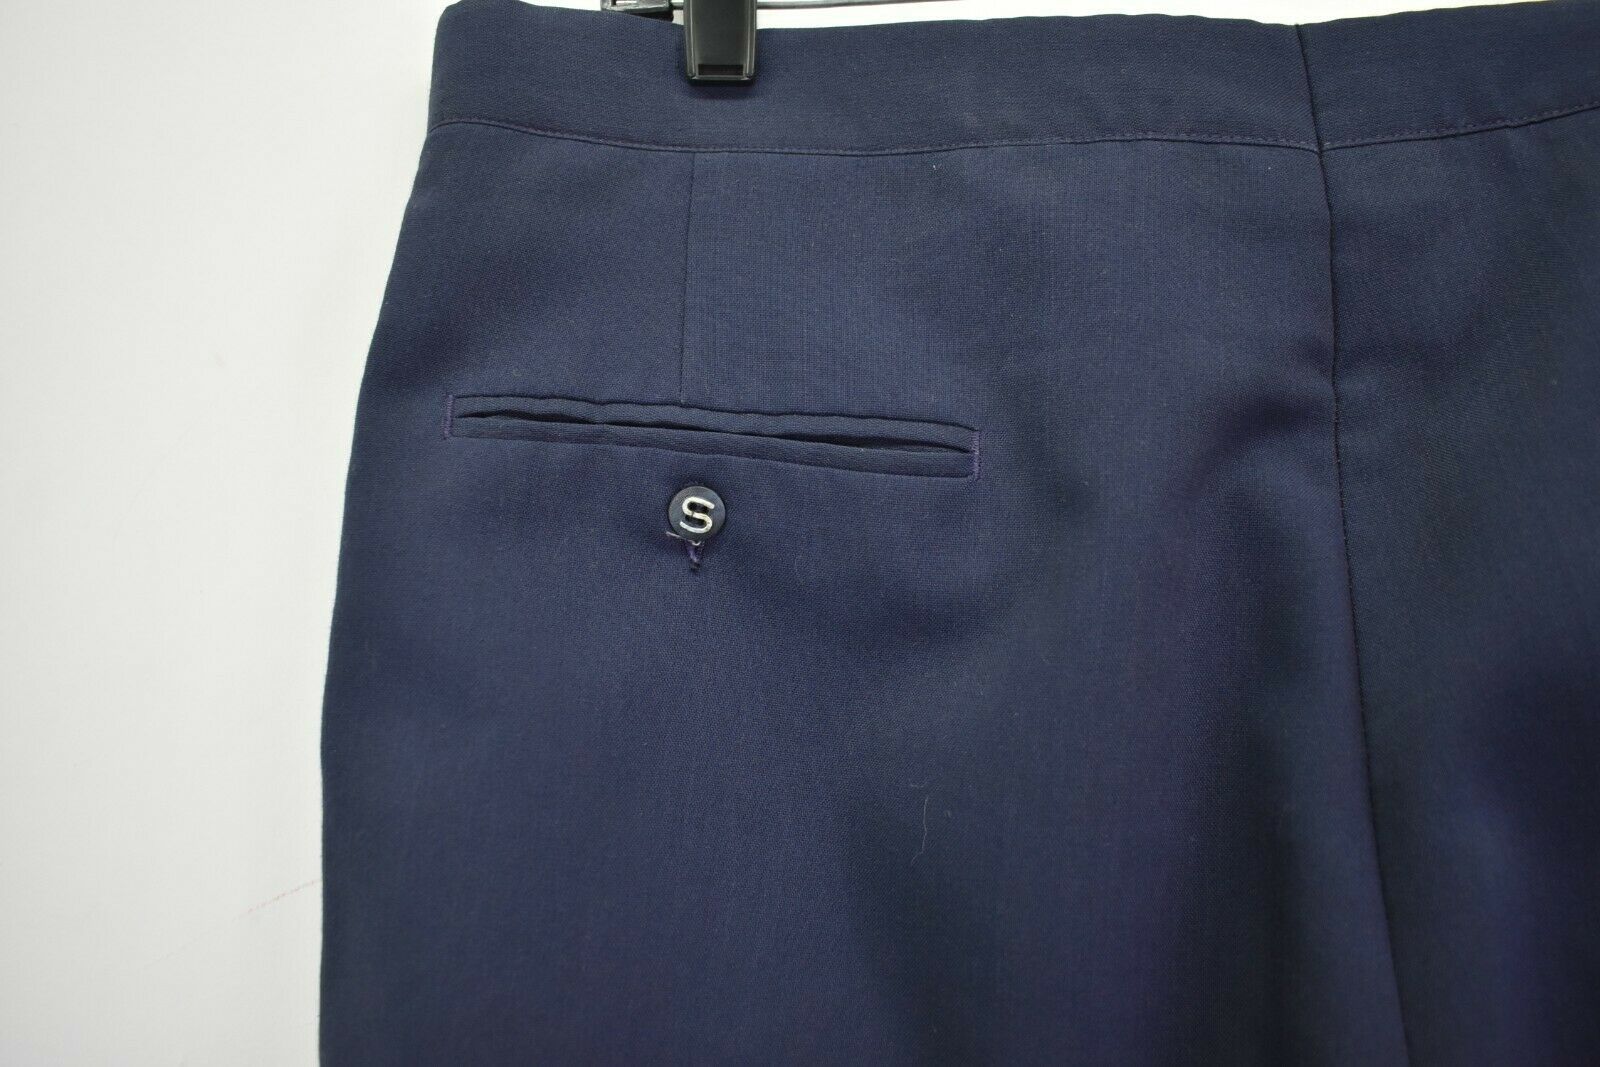 Sansabelt Men's 34 Business Professional Dress Slacks/Trousers Pre ...